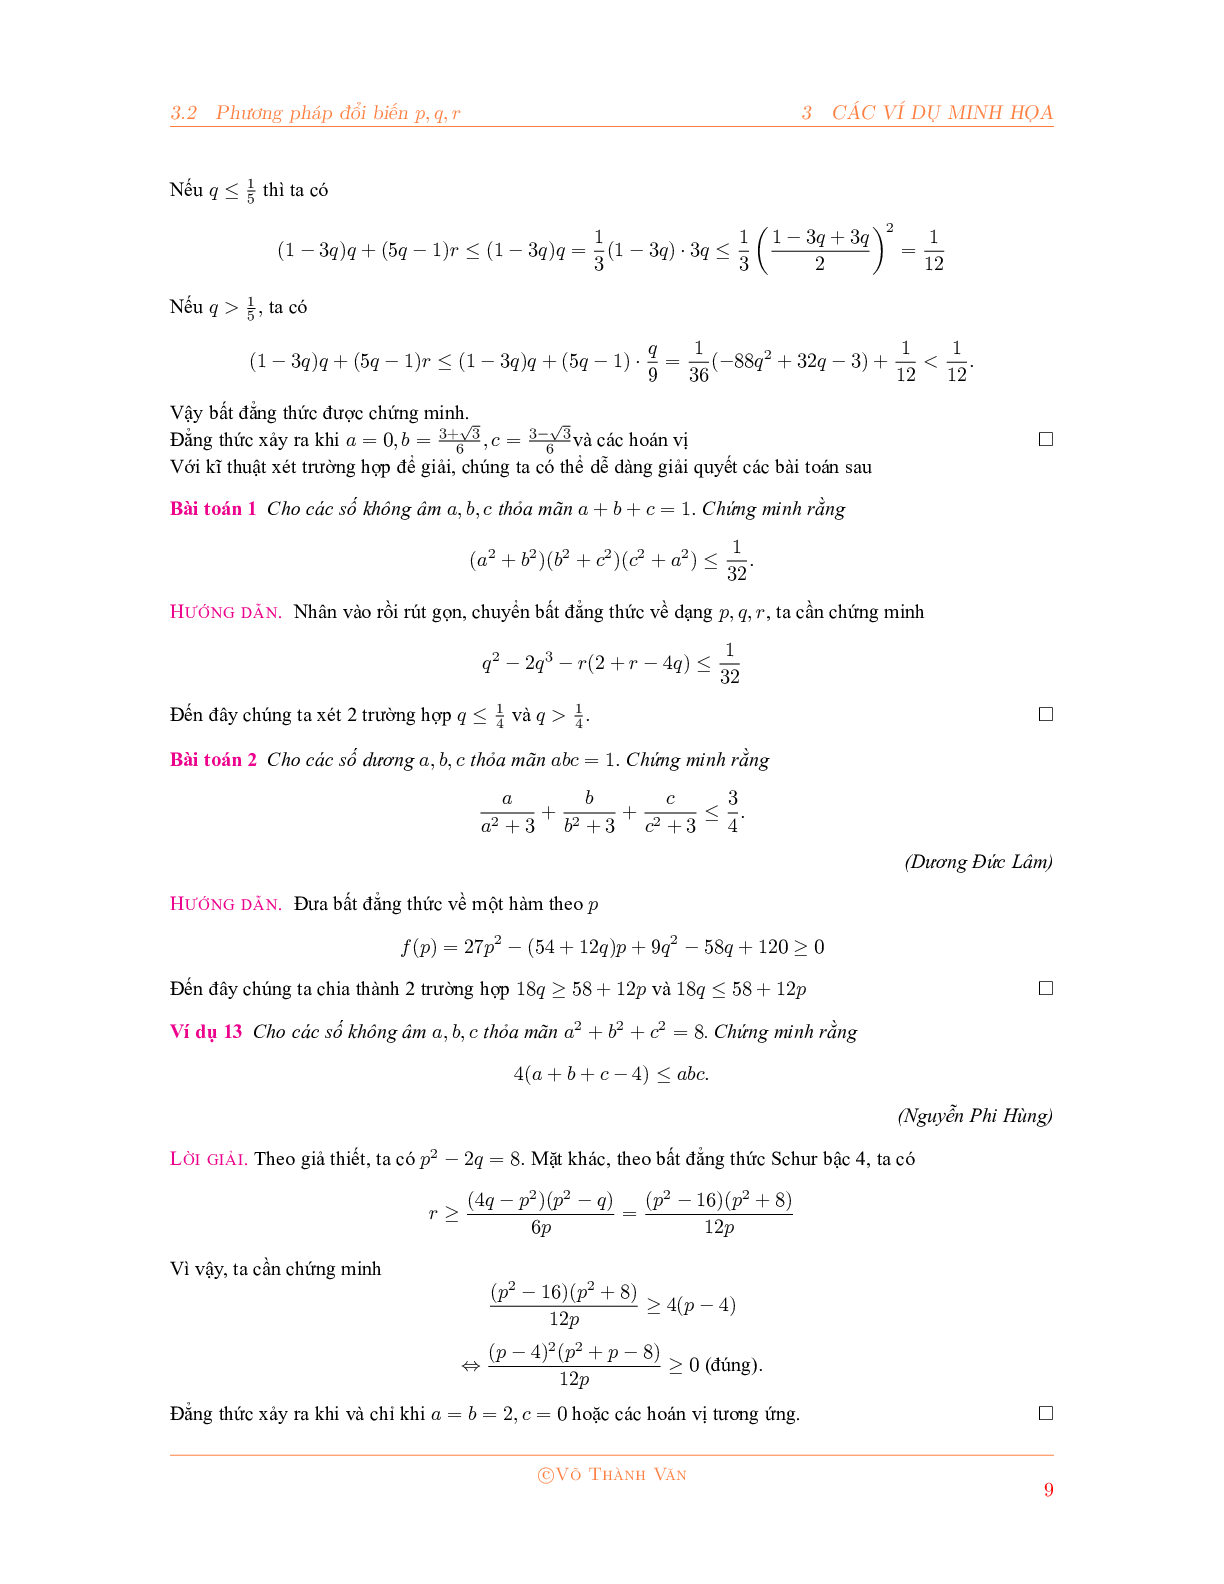 Bất đẳng thức Schur và phương pháp đổi biến P, Q, R 2023 đầy đủ, chi tiết (trang 9)